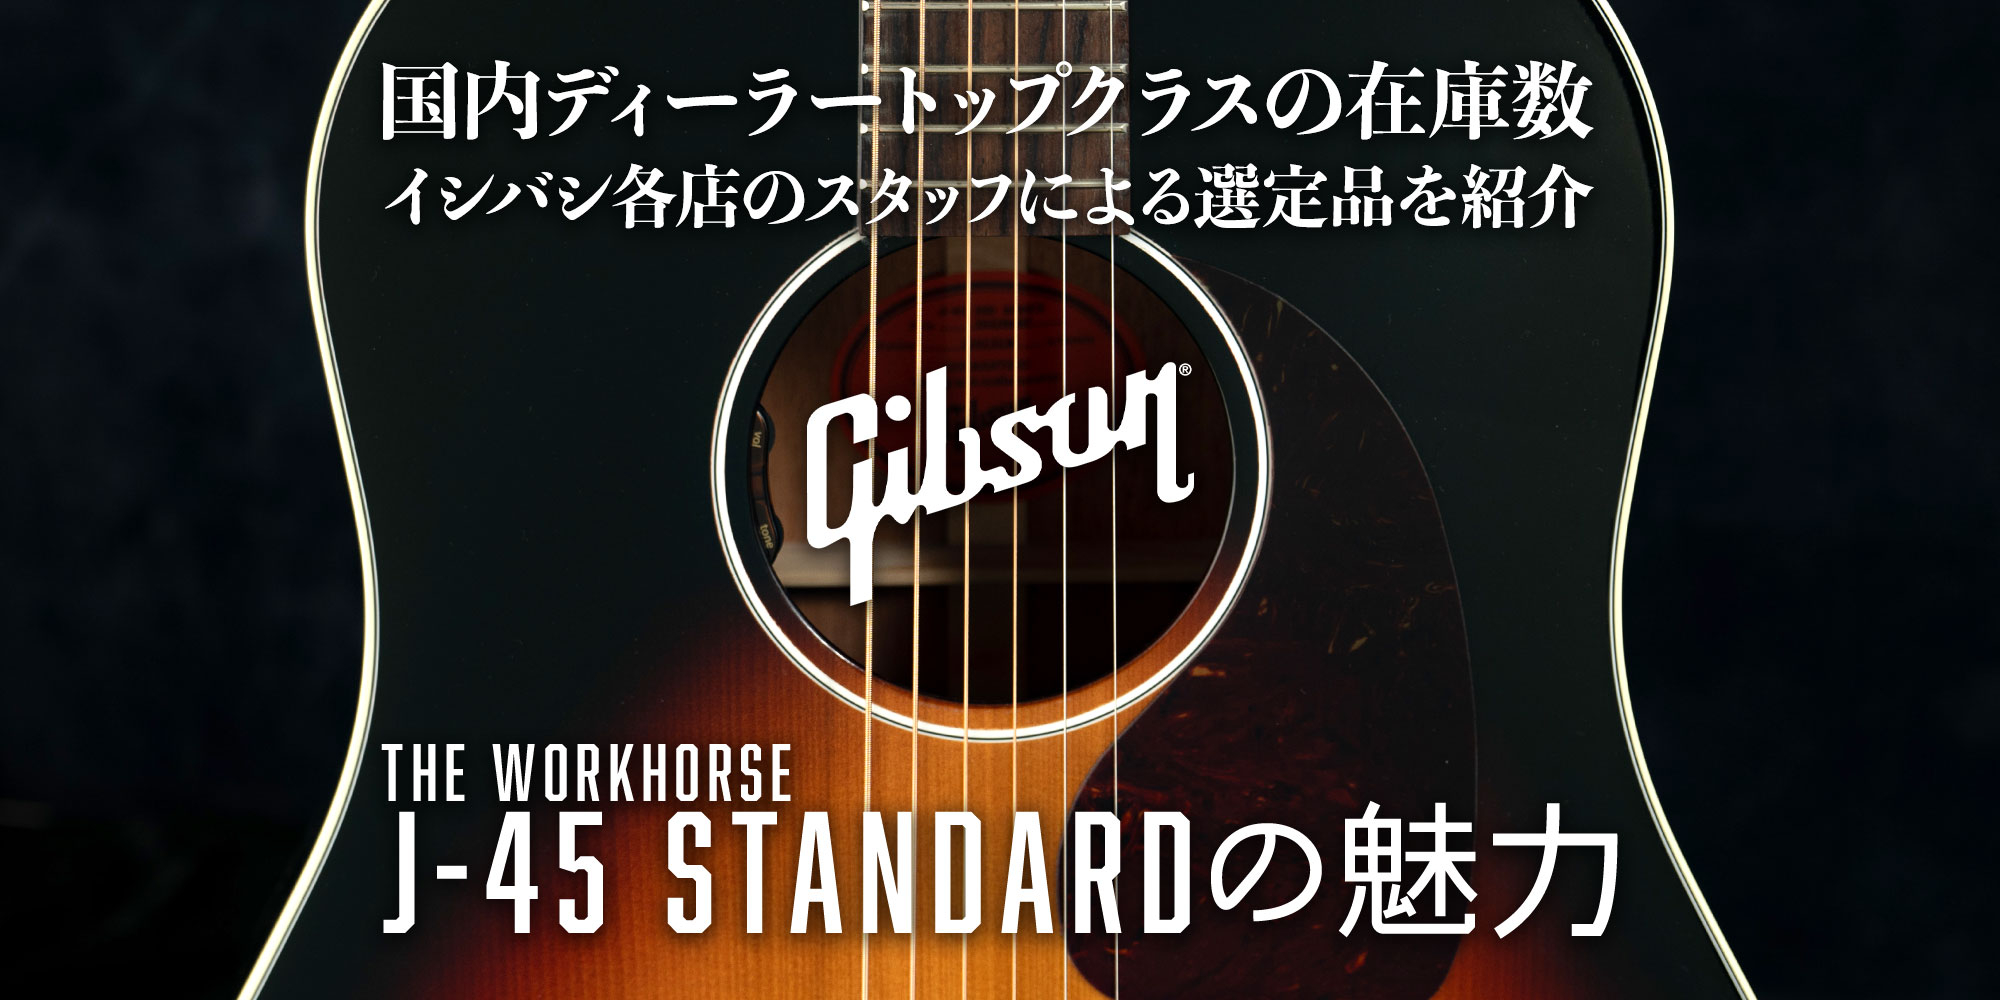 Gibson J-45 Standard の魅力